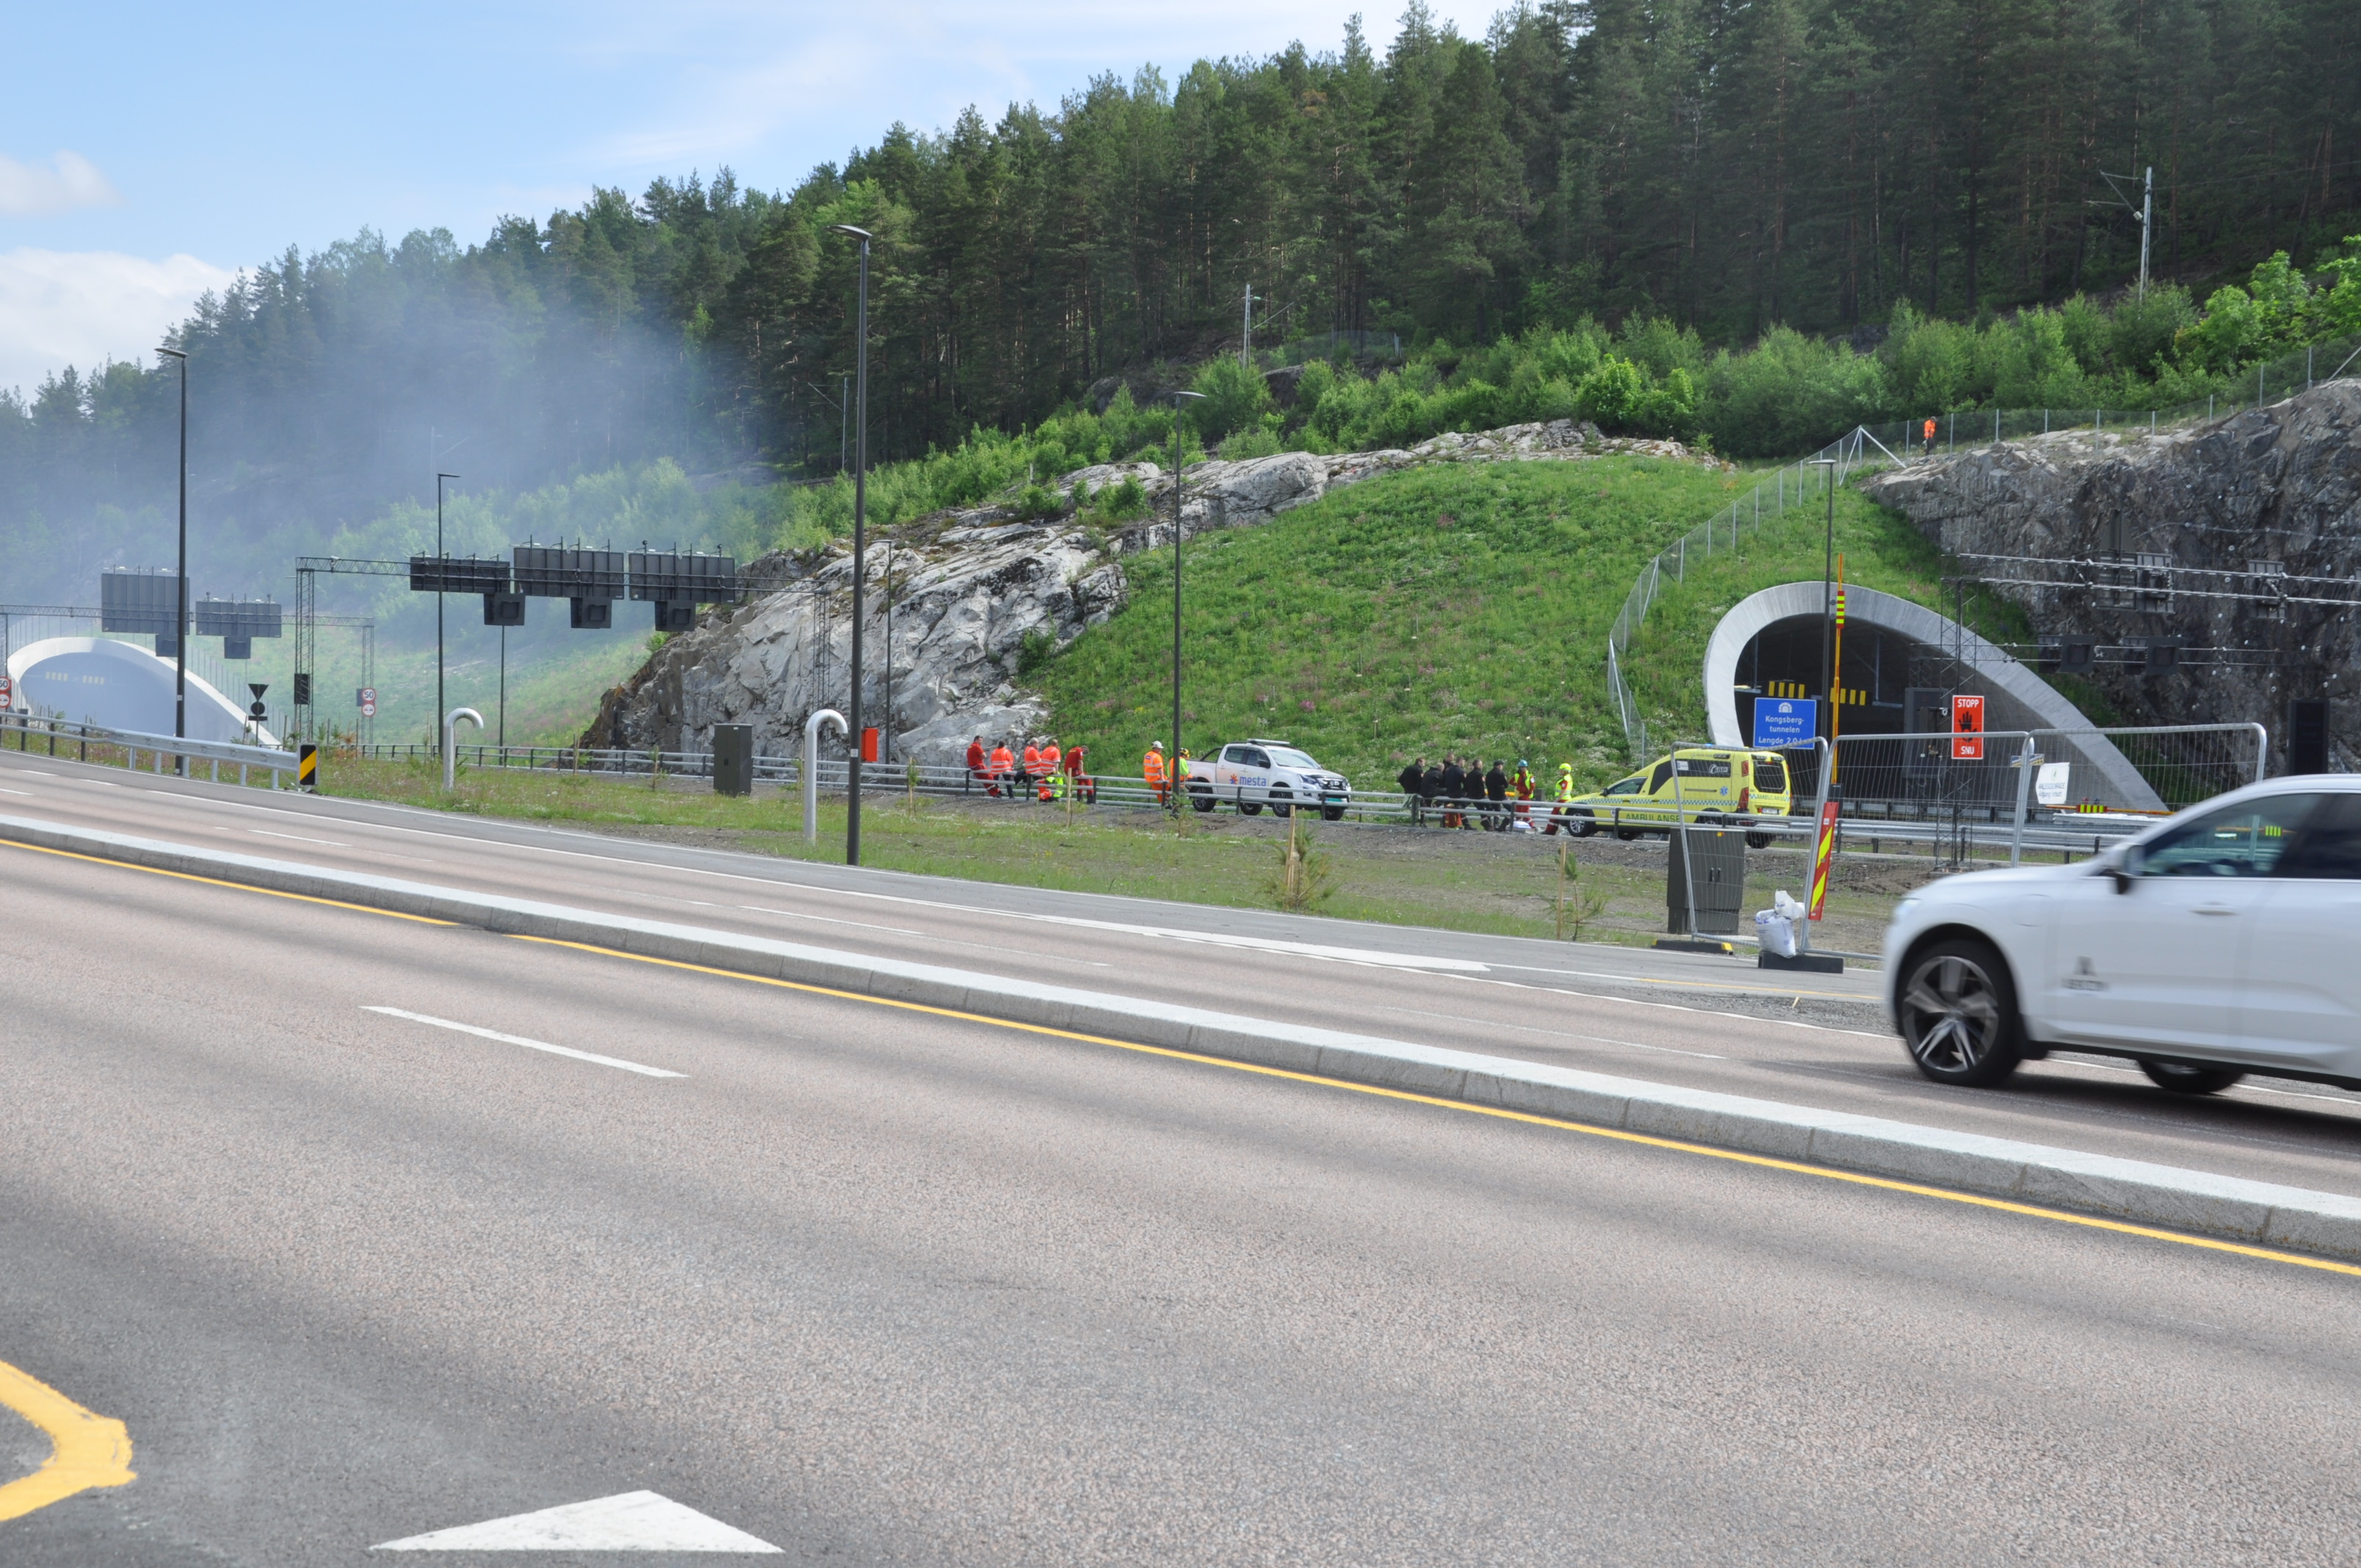 Tunnelviftene blåste røyken ned mot Tislegård. (Foto: Kjell Wold)